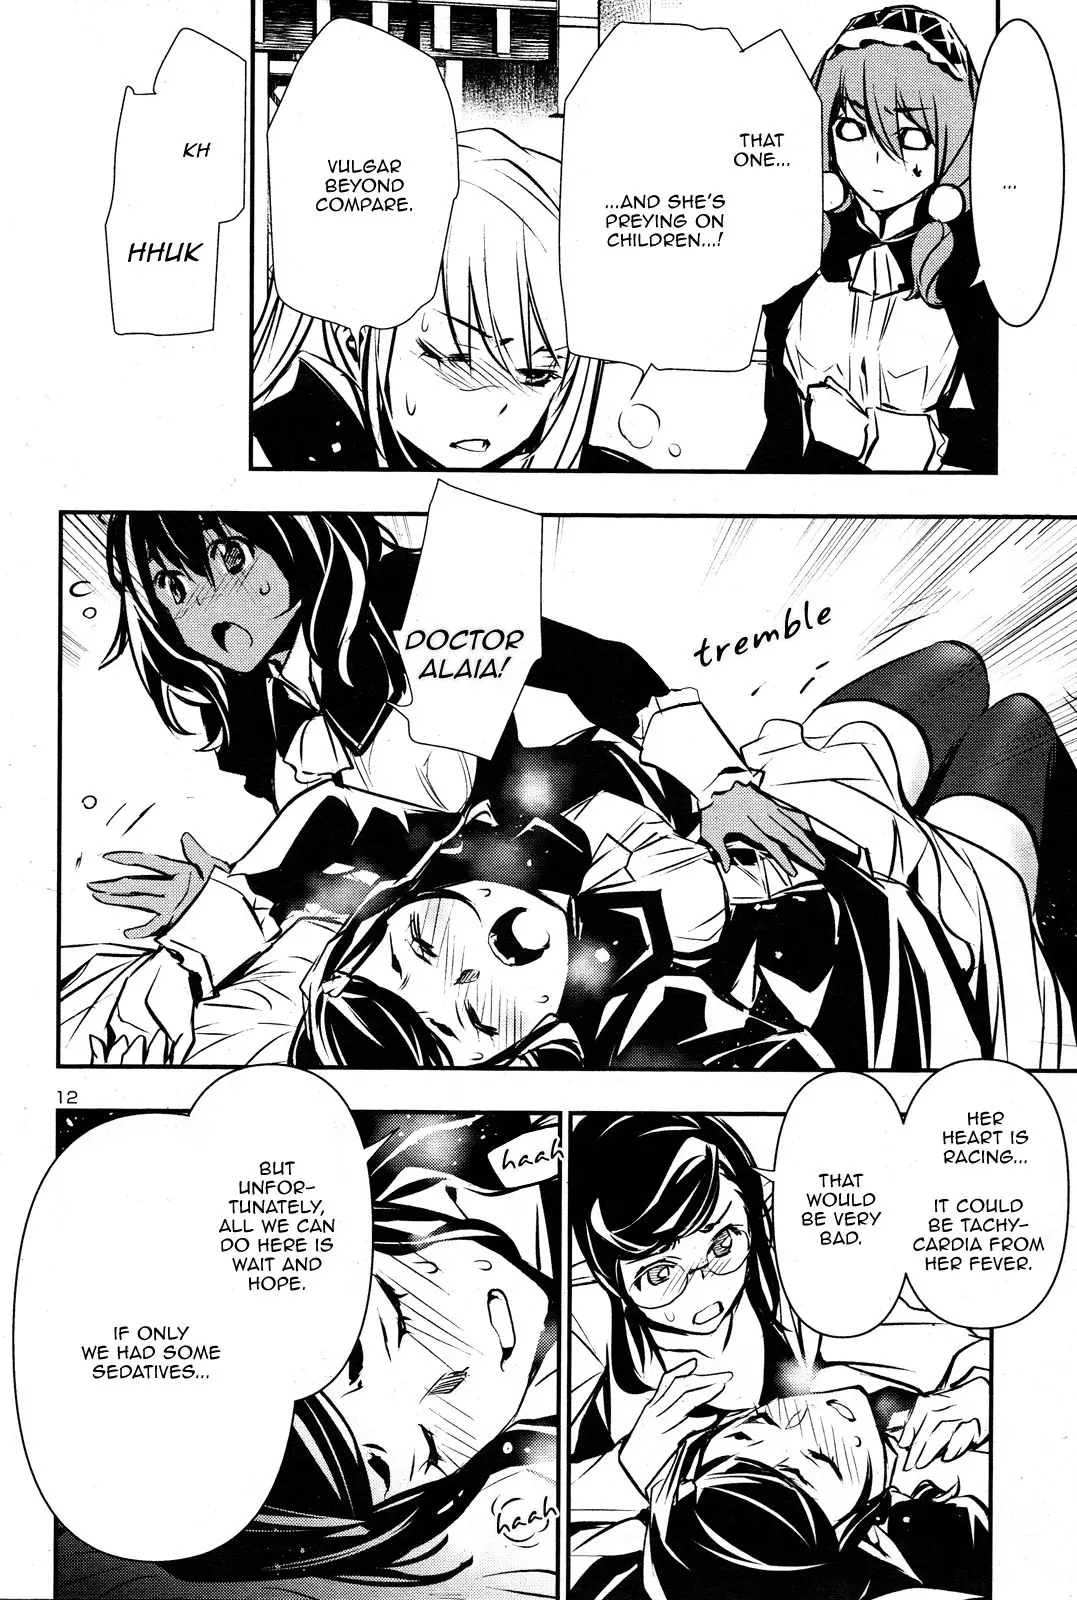 Shinju no Nectar - 43 page 11